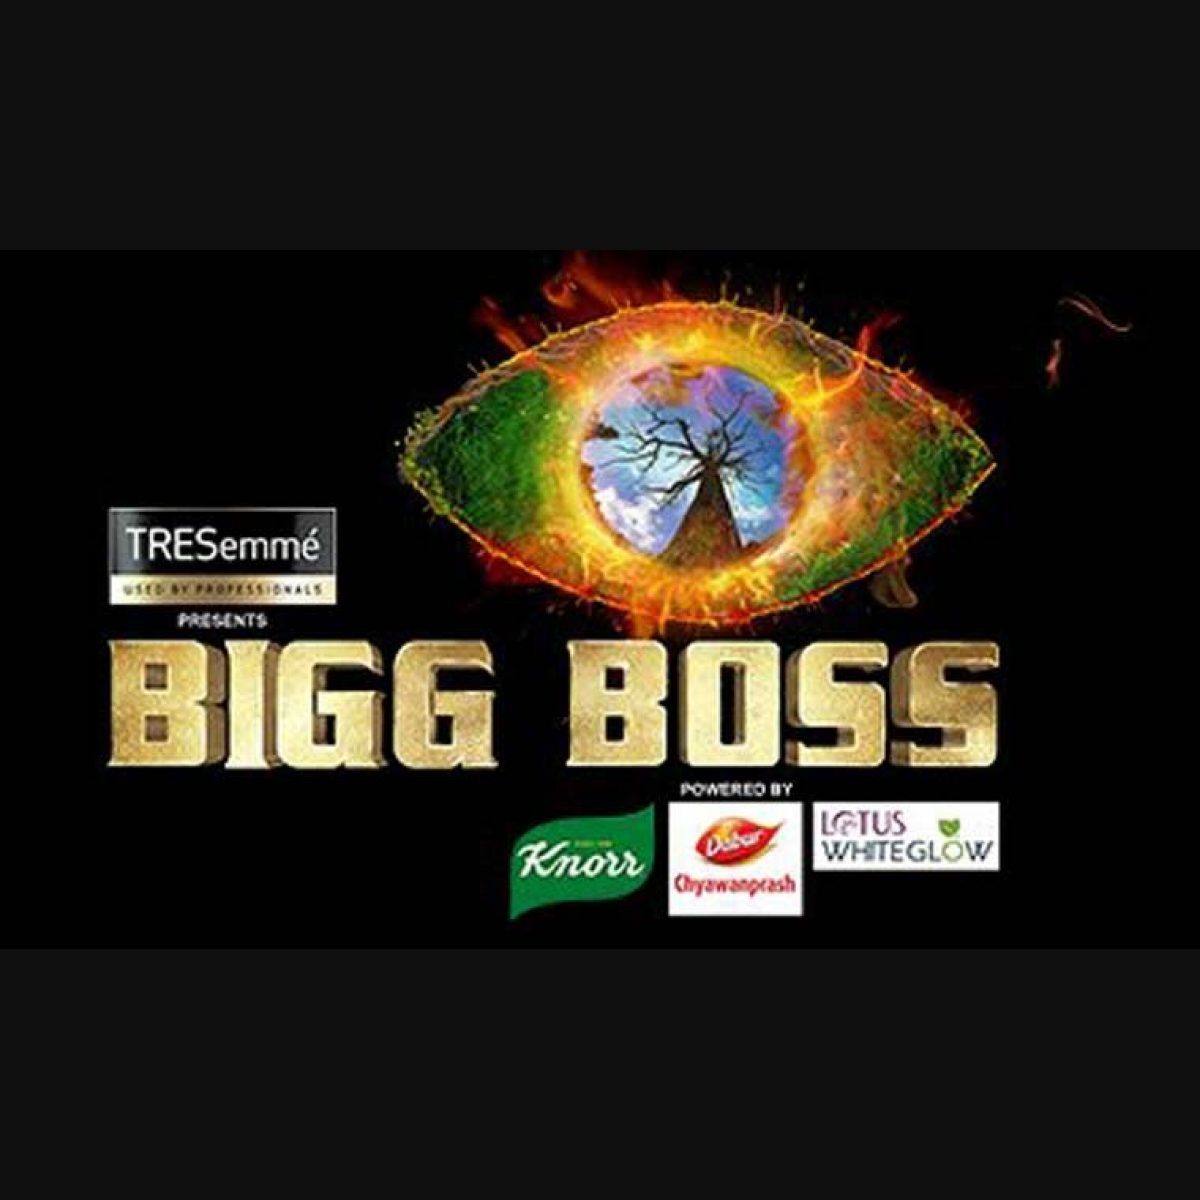 Bigg boss ultimate tamil online